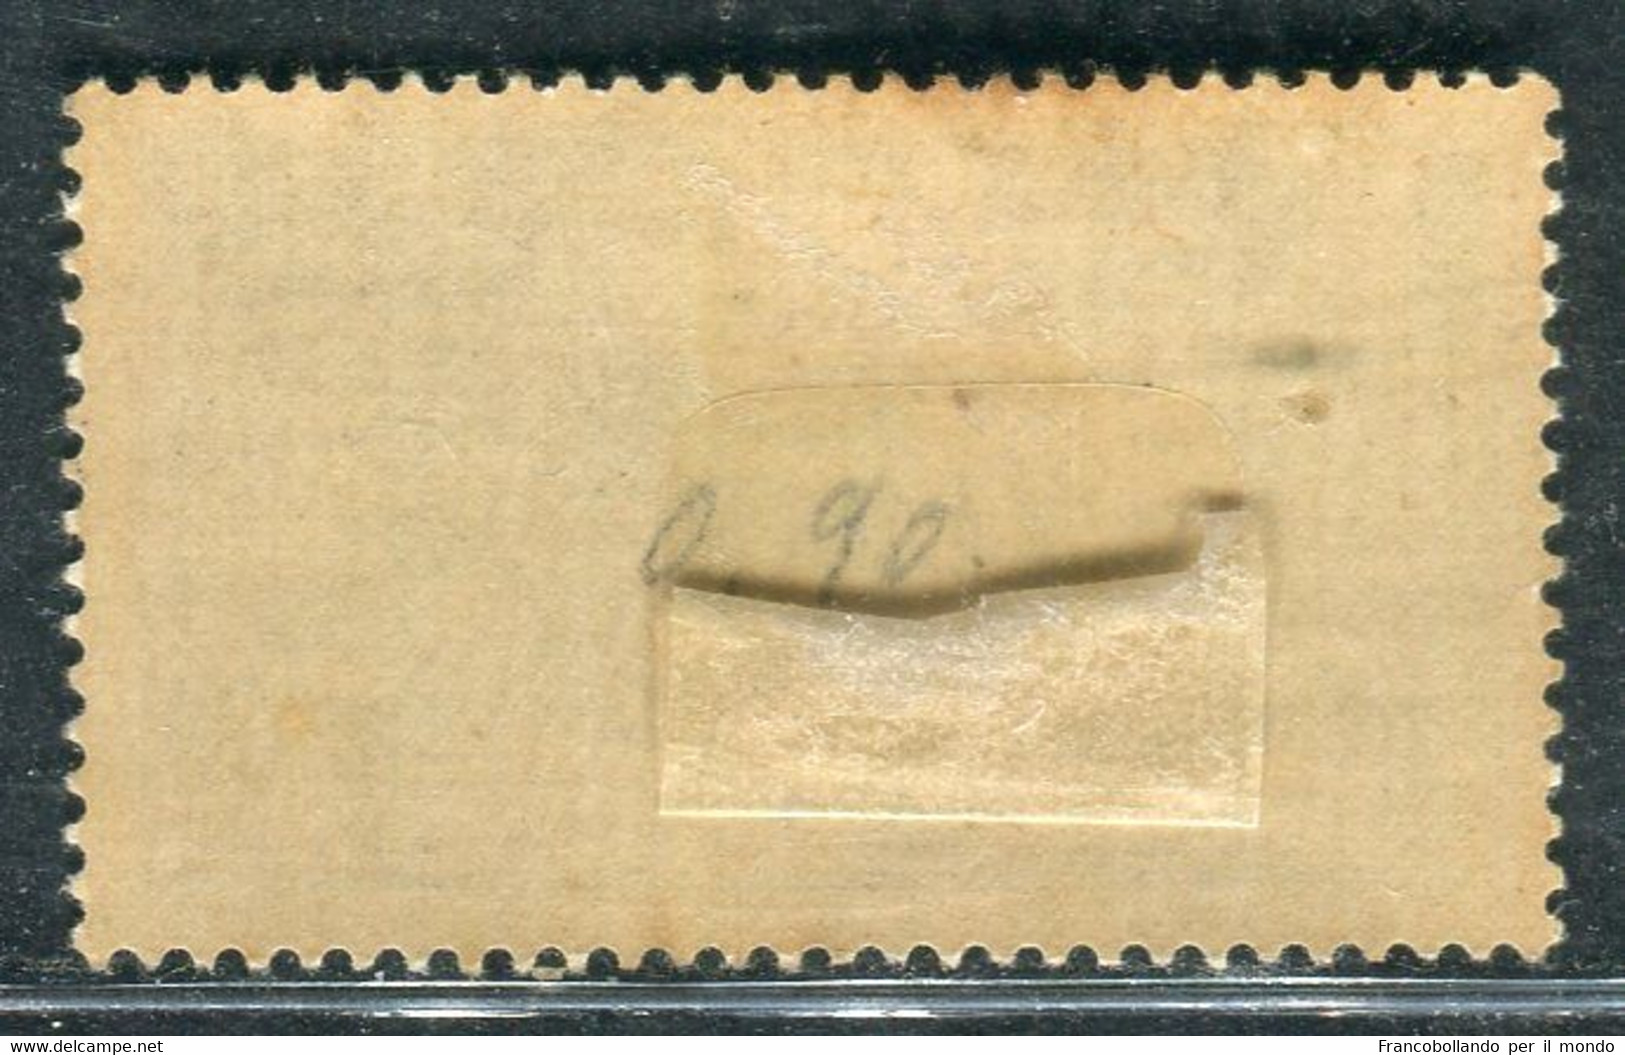 1930 Egeo Isole Stampalia 25 Cent Serie Ferrucci MH Sassone 13 - Egée (Lipso)